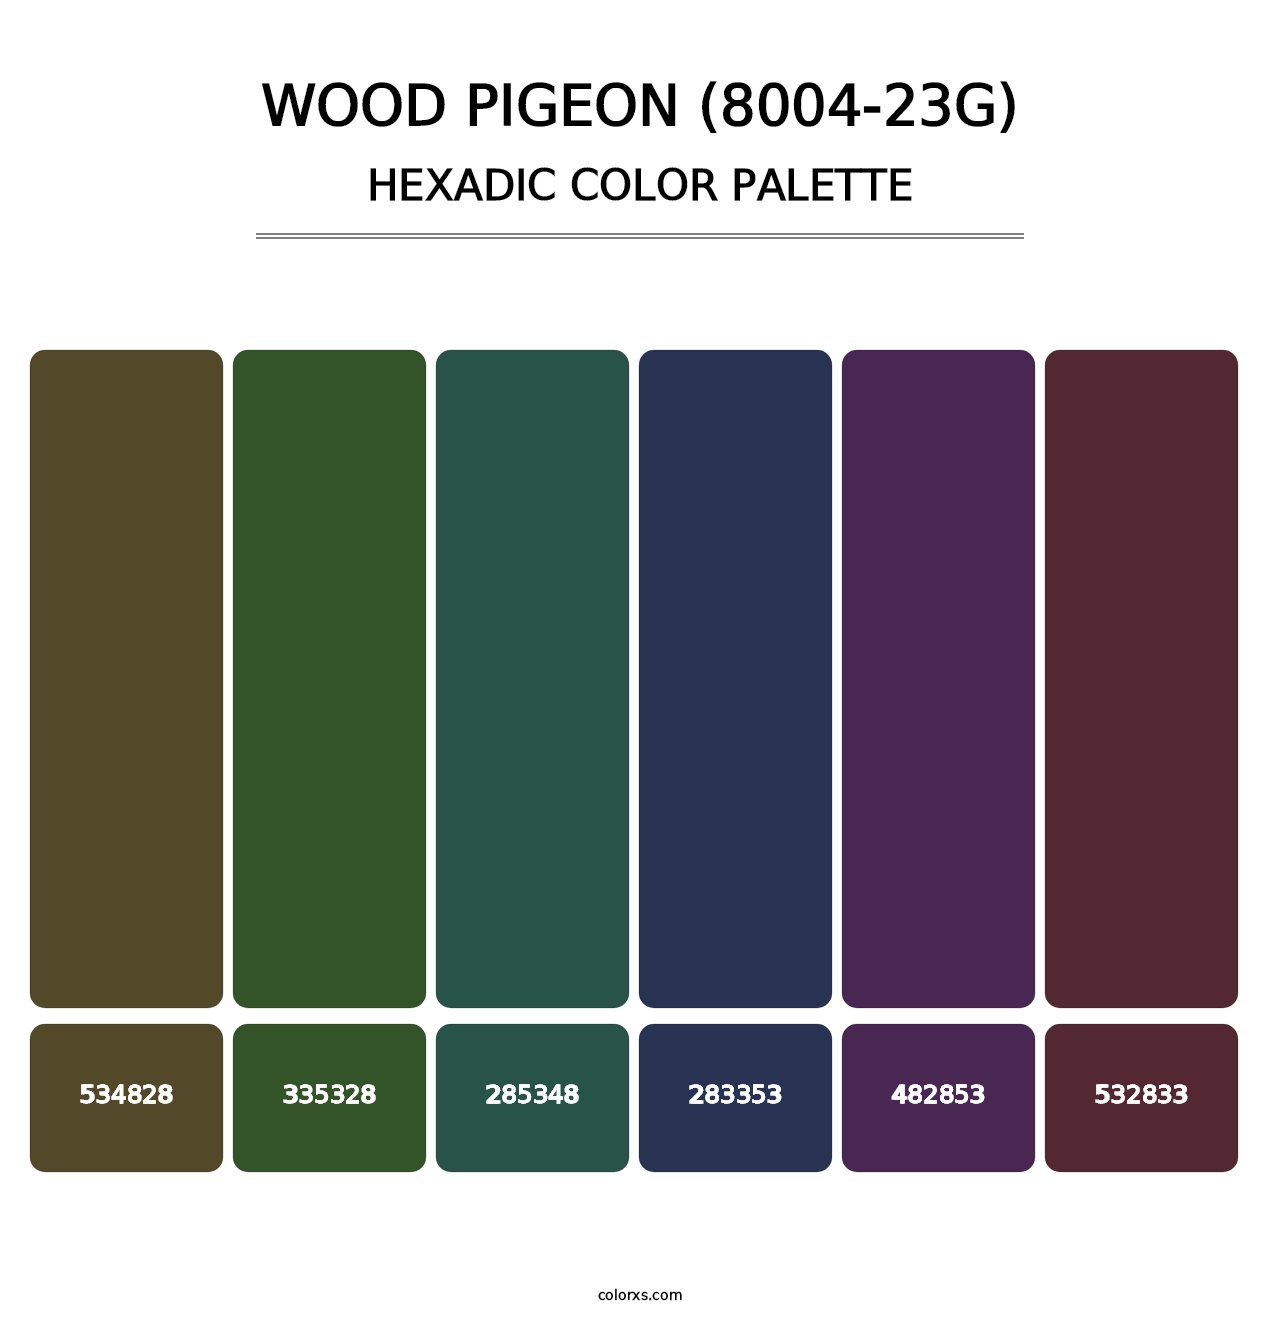 Wood Pigeon (8004-23G) - Hexadic Color Palette